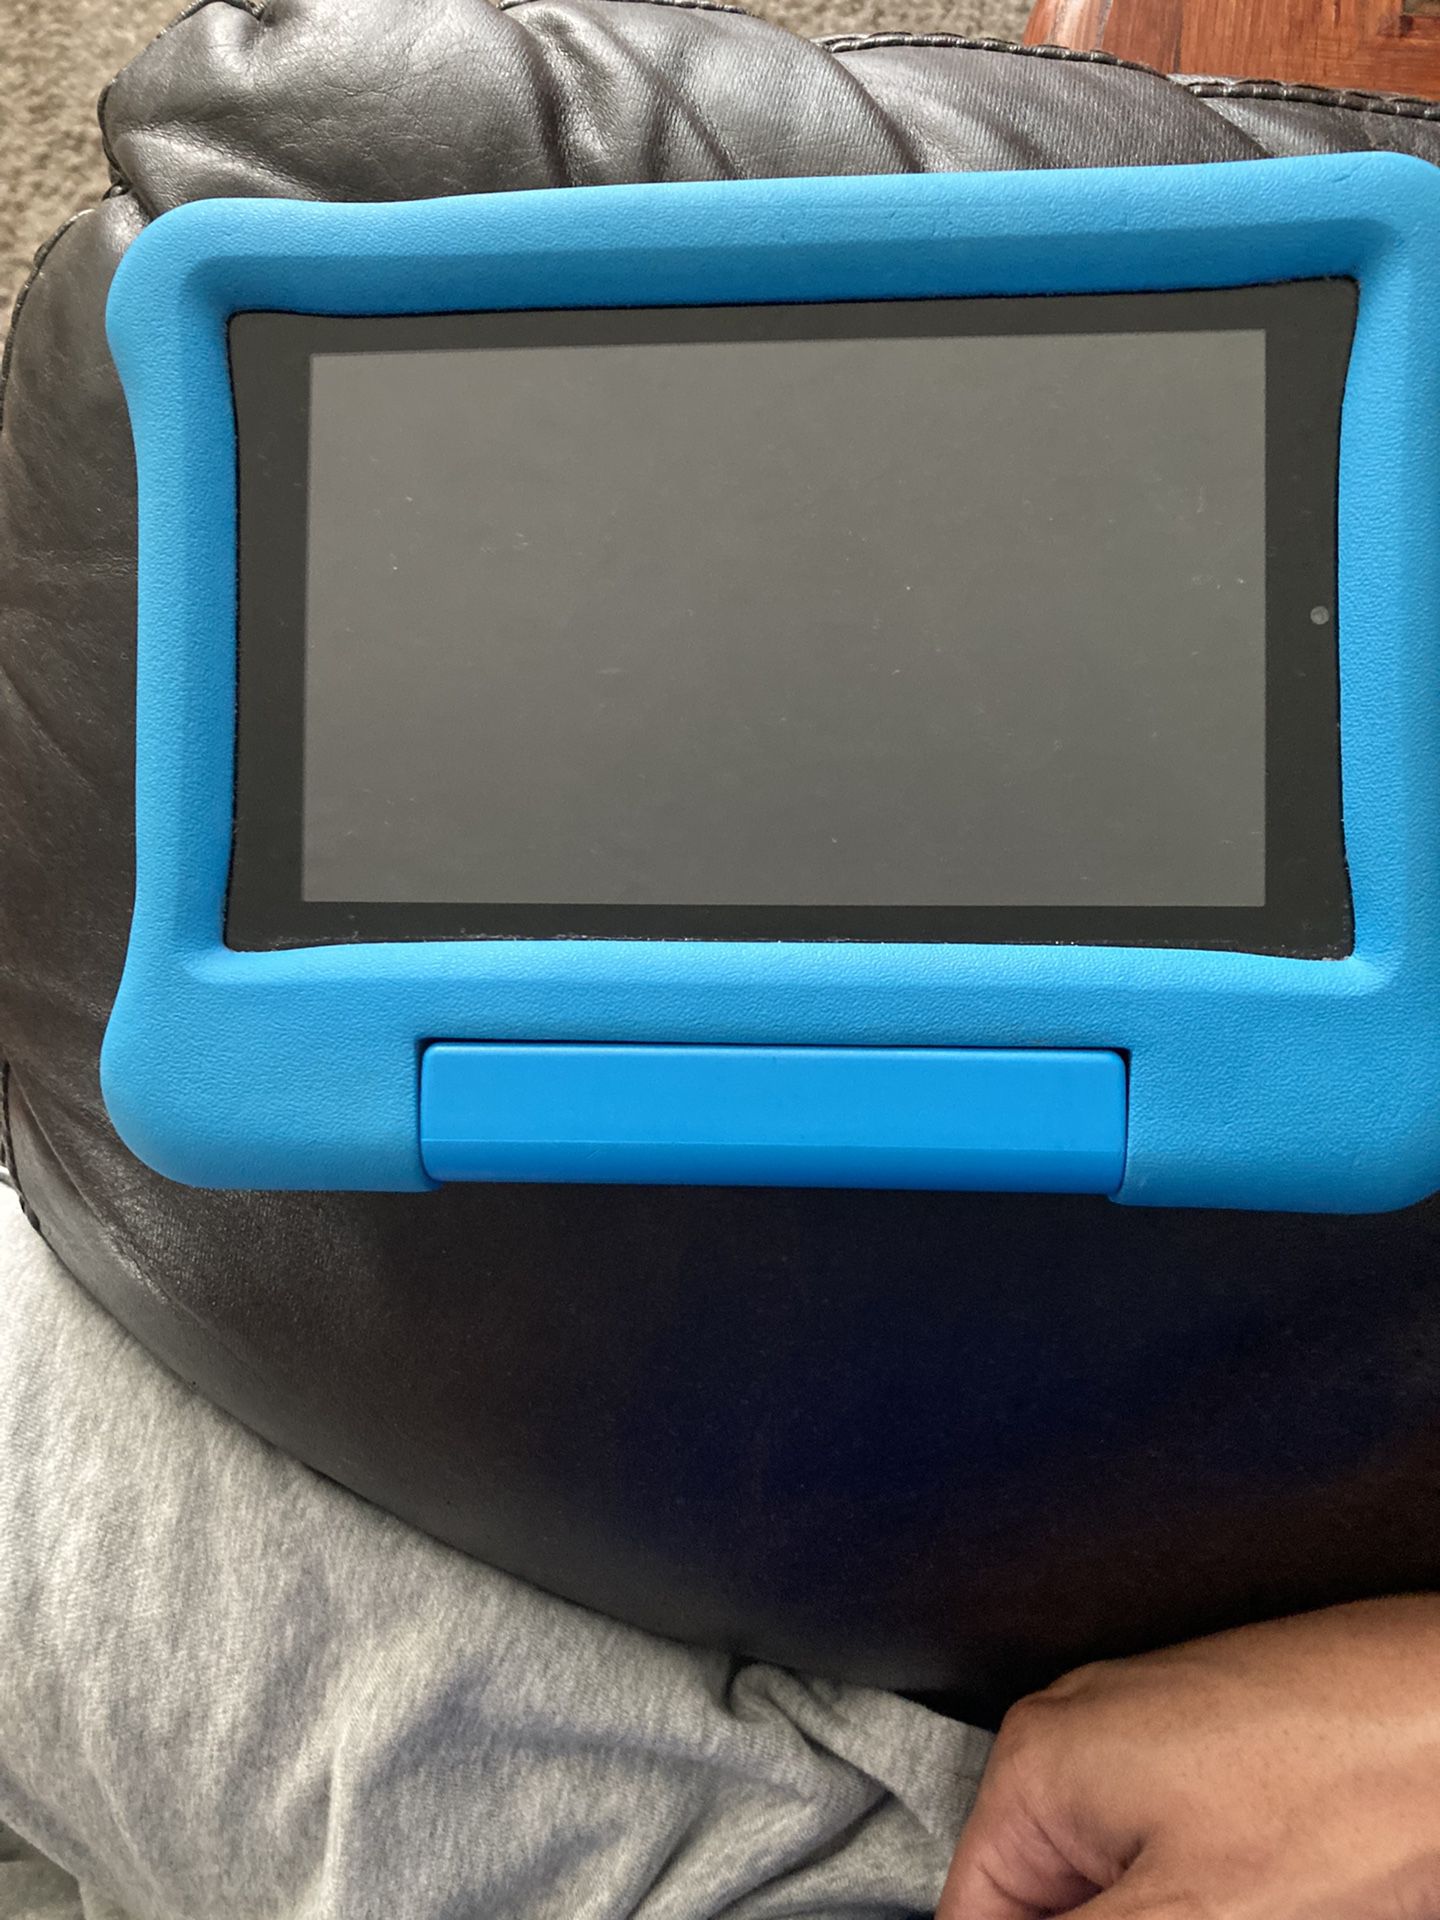 Child’s Amazon Tablet